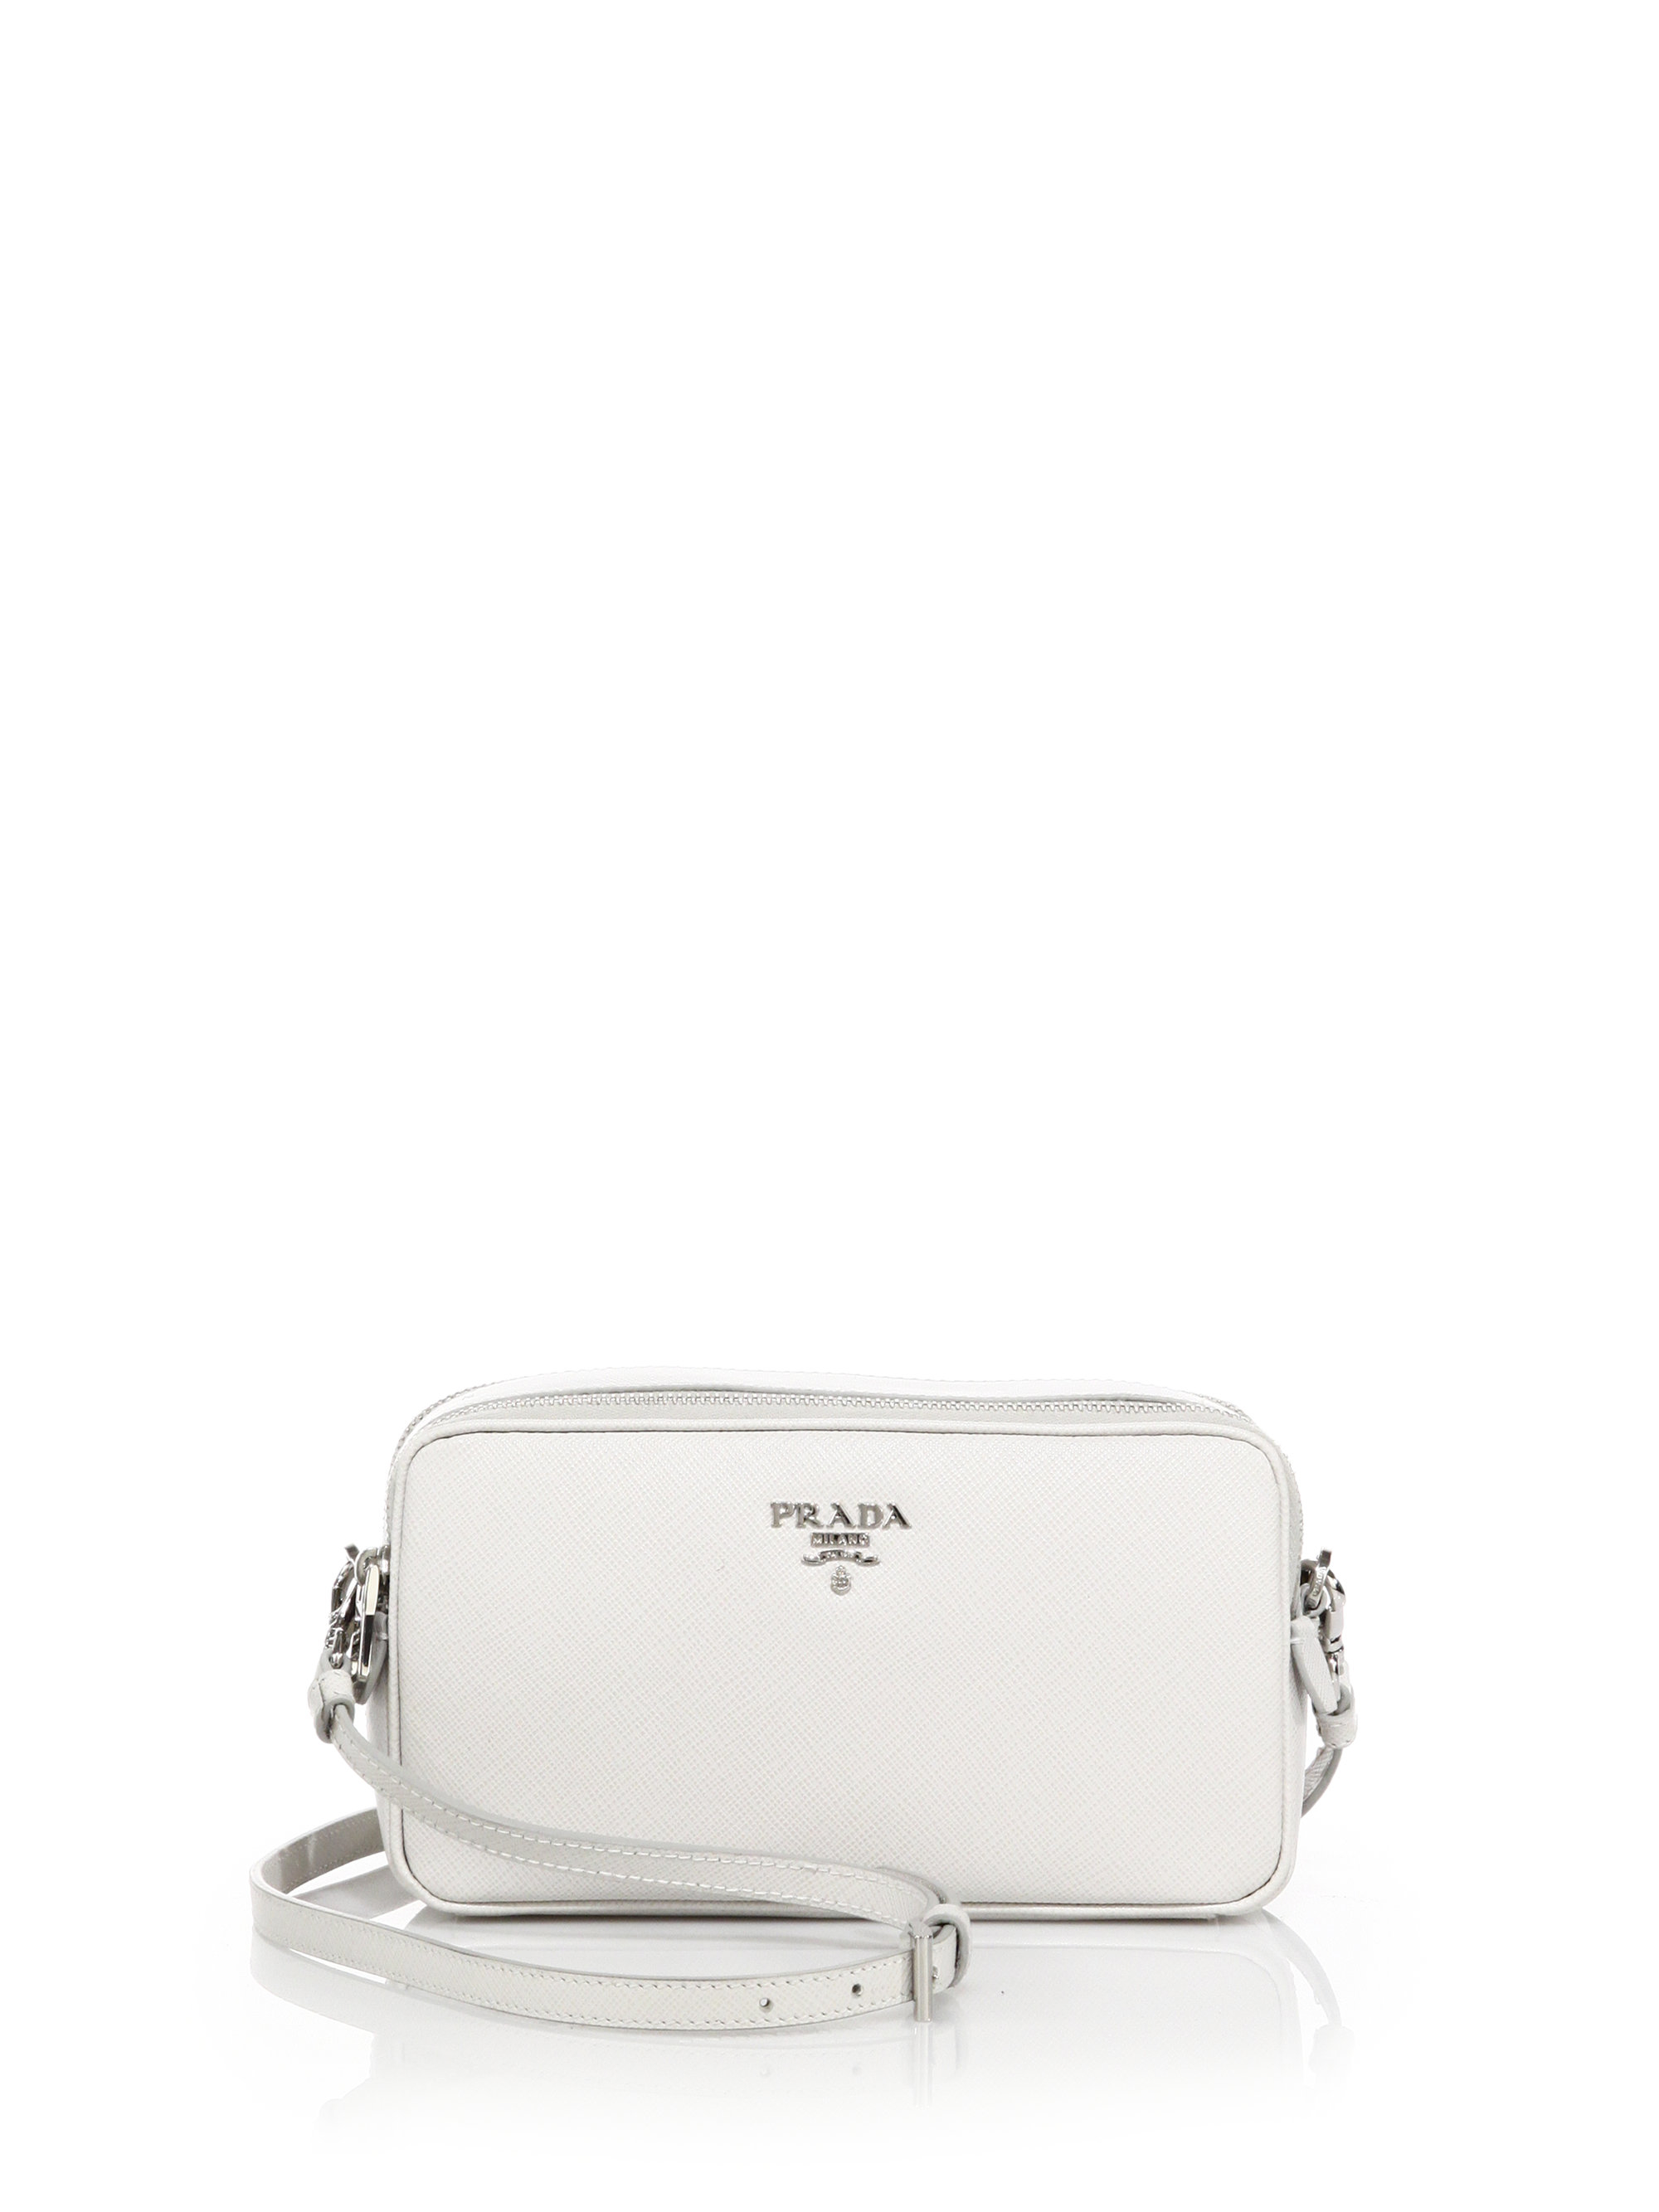 Prada Saffiano Leather Camera Bag in White (talco) | Lyst